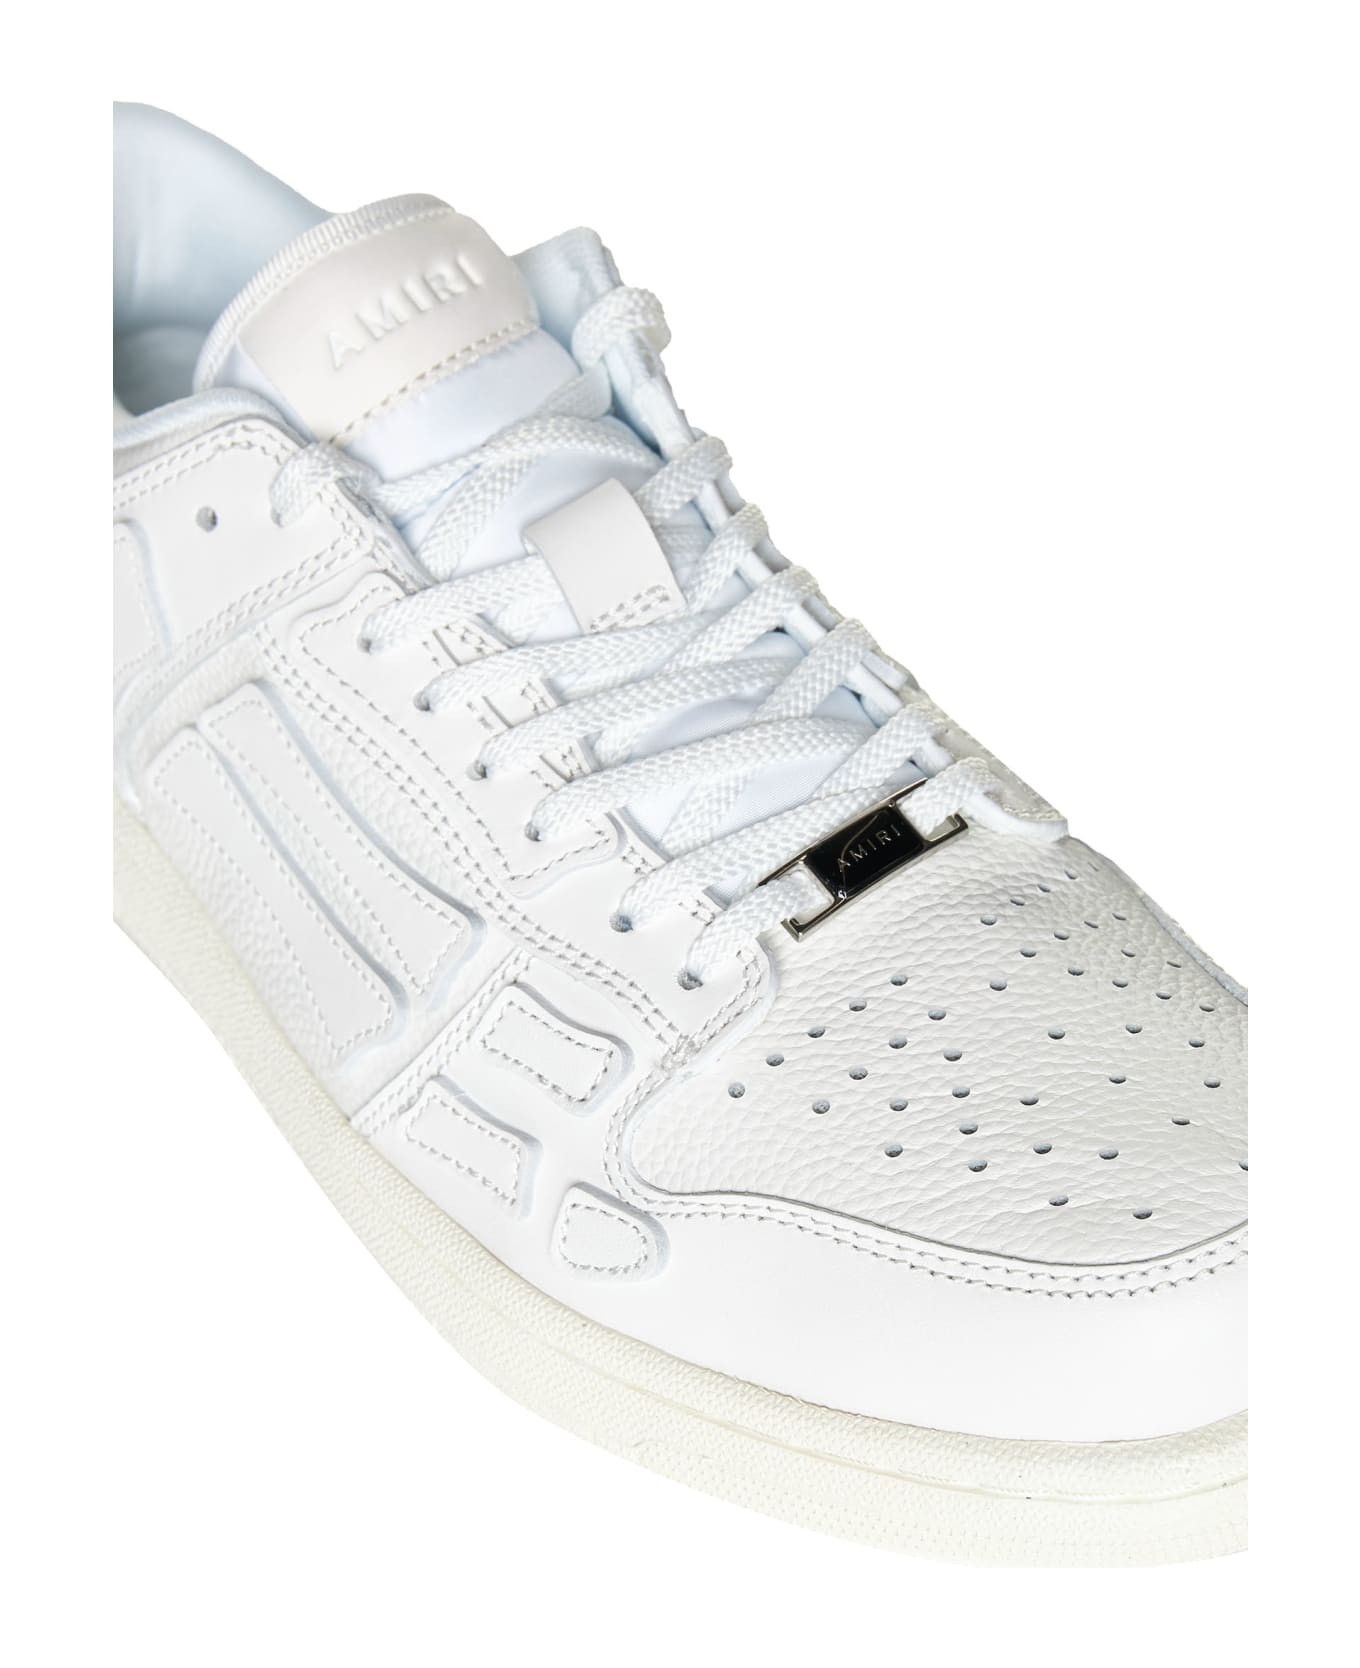 AMIRI Sneakers - White/white スニーカー